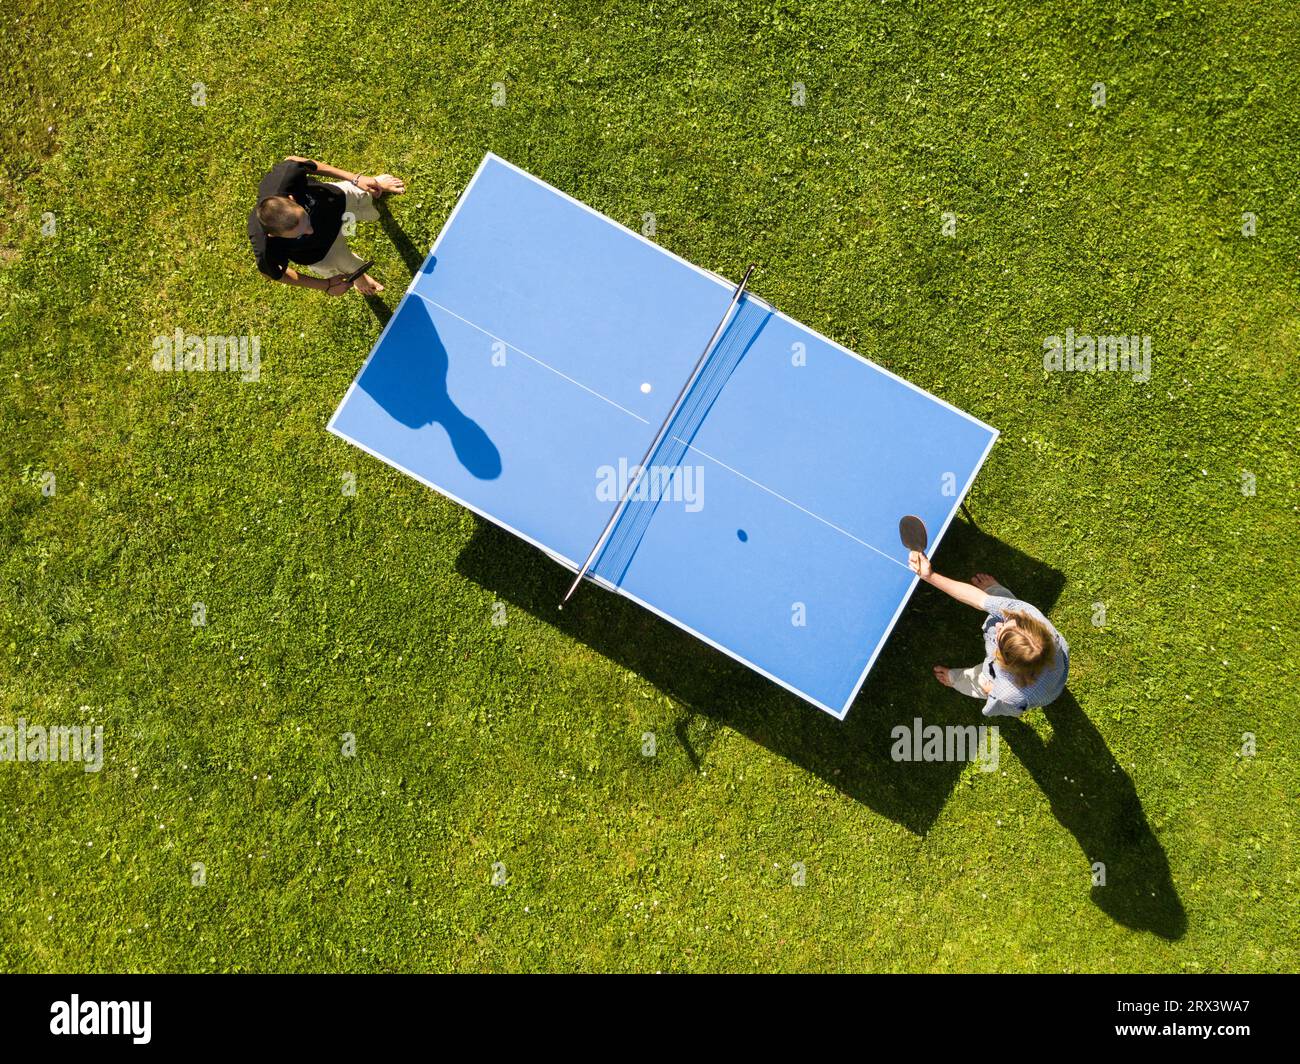 Vista aerea persone che giocano a ping pong all'aperto. Vista dall'alto due ragazzi che giocano a ping pong su un prato verde. Sport all'aperto con vista aerea Foto Stock